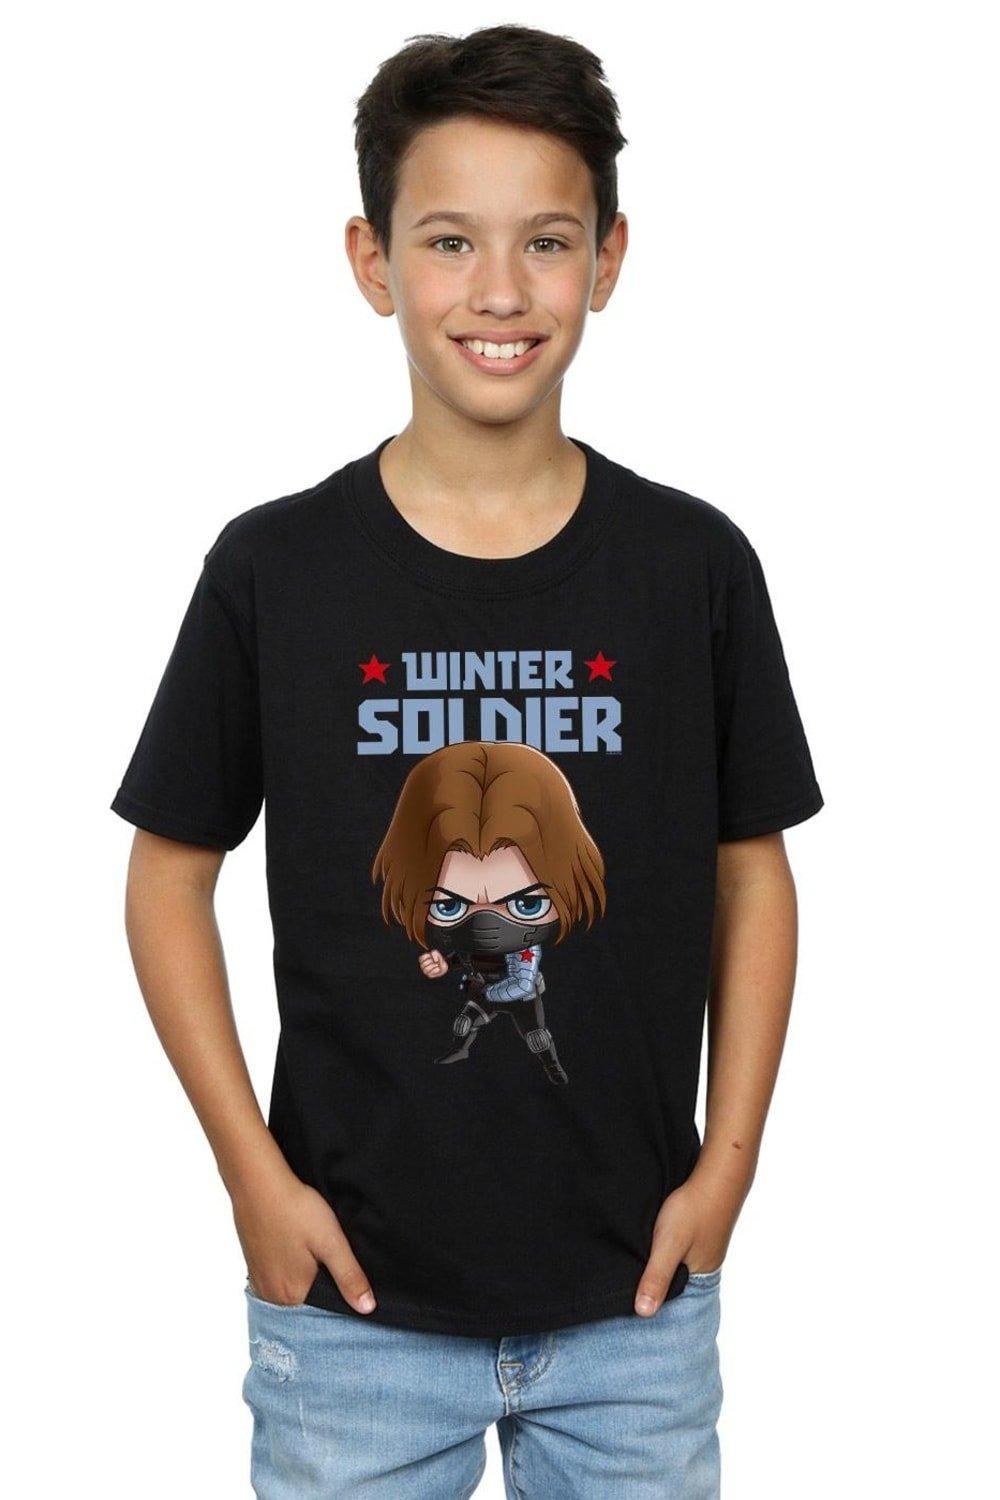 Winter Soldier Bucky Toon T-Shirt